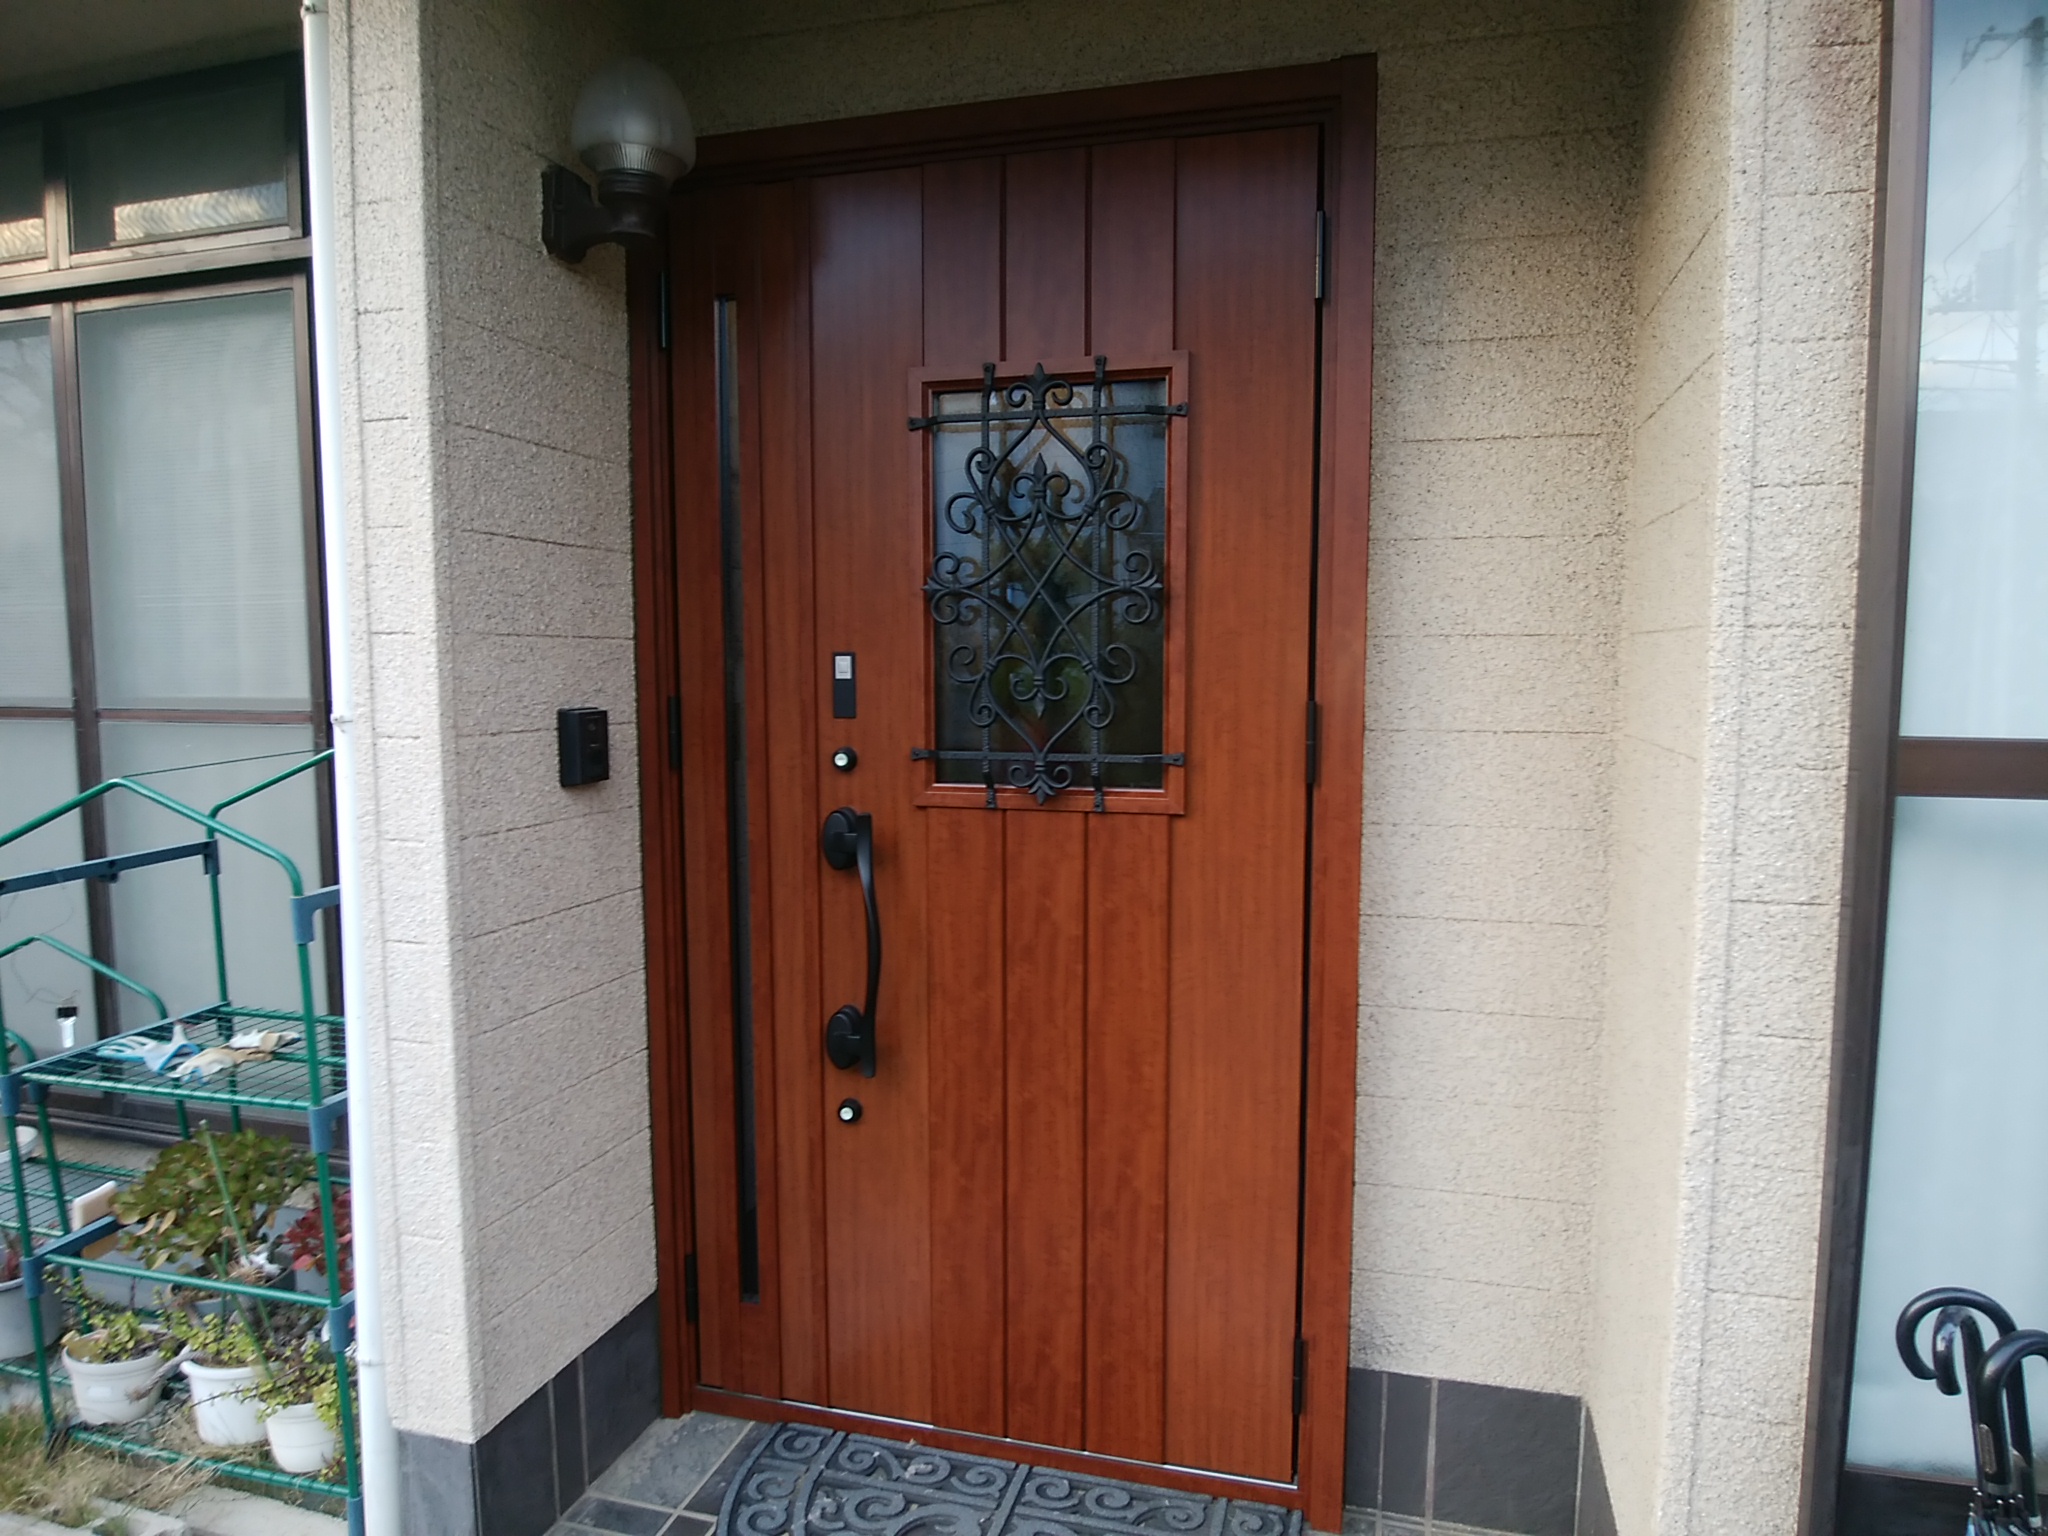 【LIXILリシェント D41型】30年くらい前のランマ付きのアルミドアを木目調リシェントでリフォーム | 玄関ドアリフォームの玄関ドアマイスター